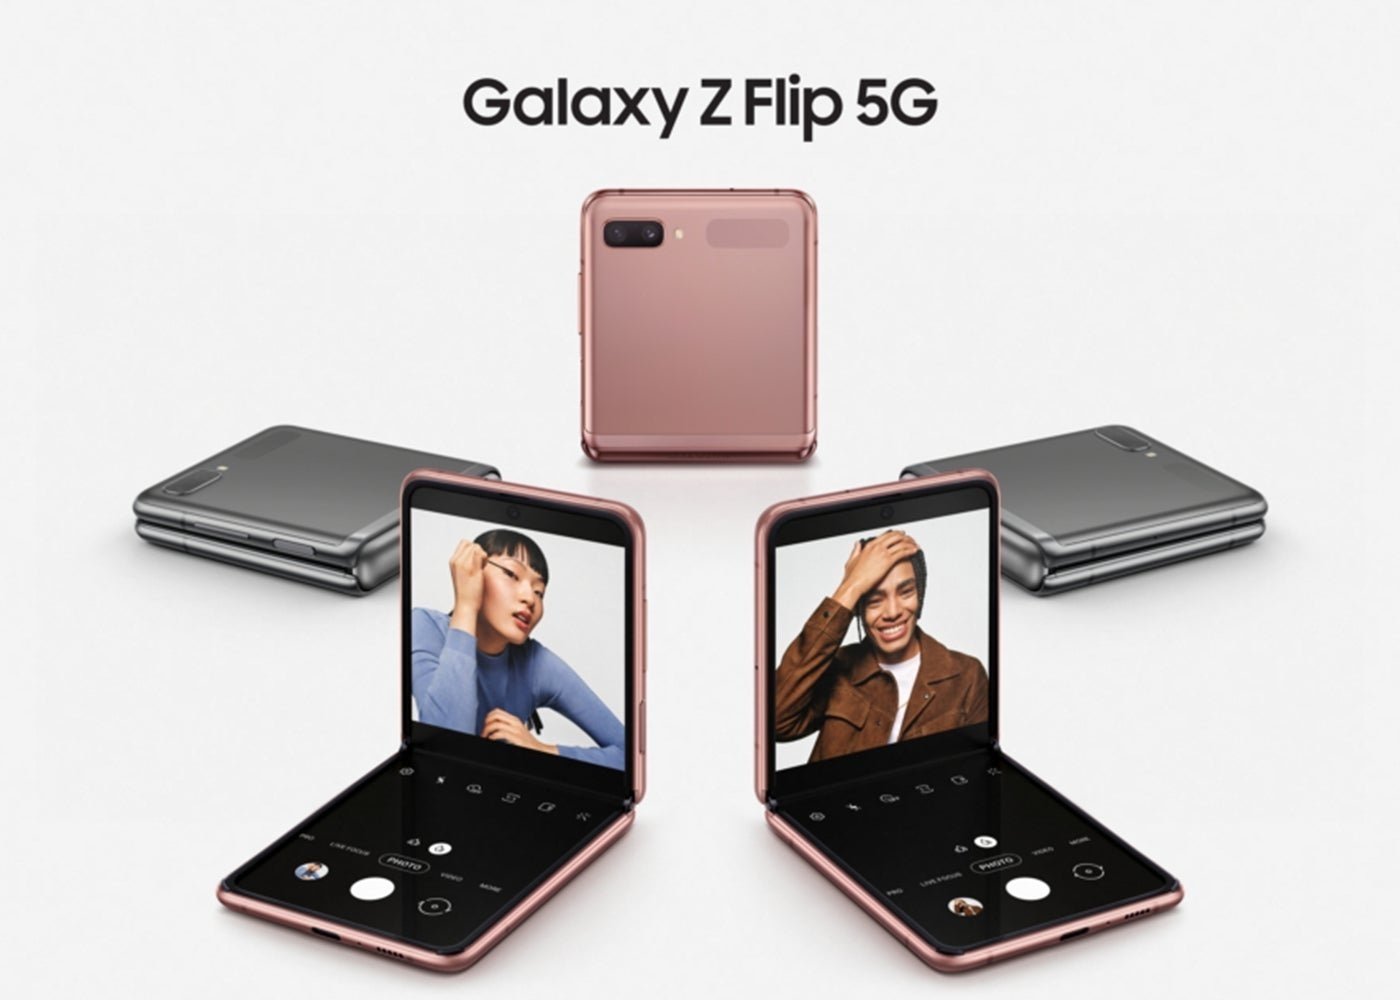 Samsung renueva el Galaxy Z Flip con Snapdragon 865+ y 5G